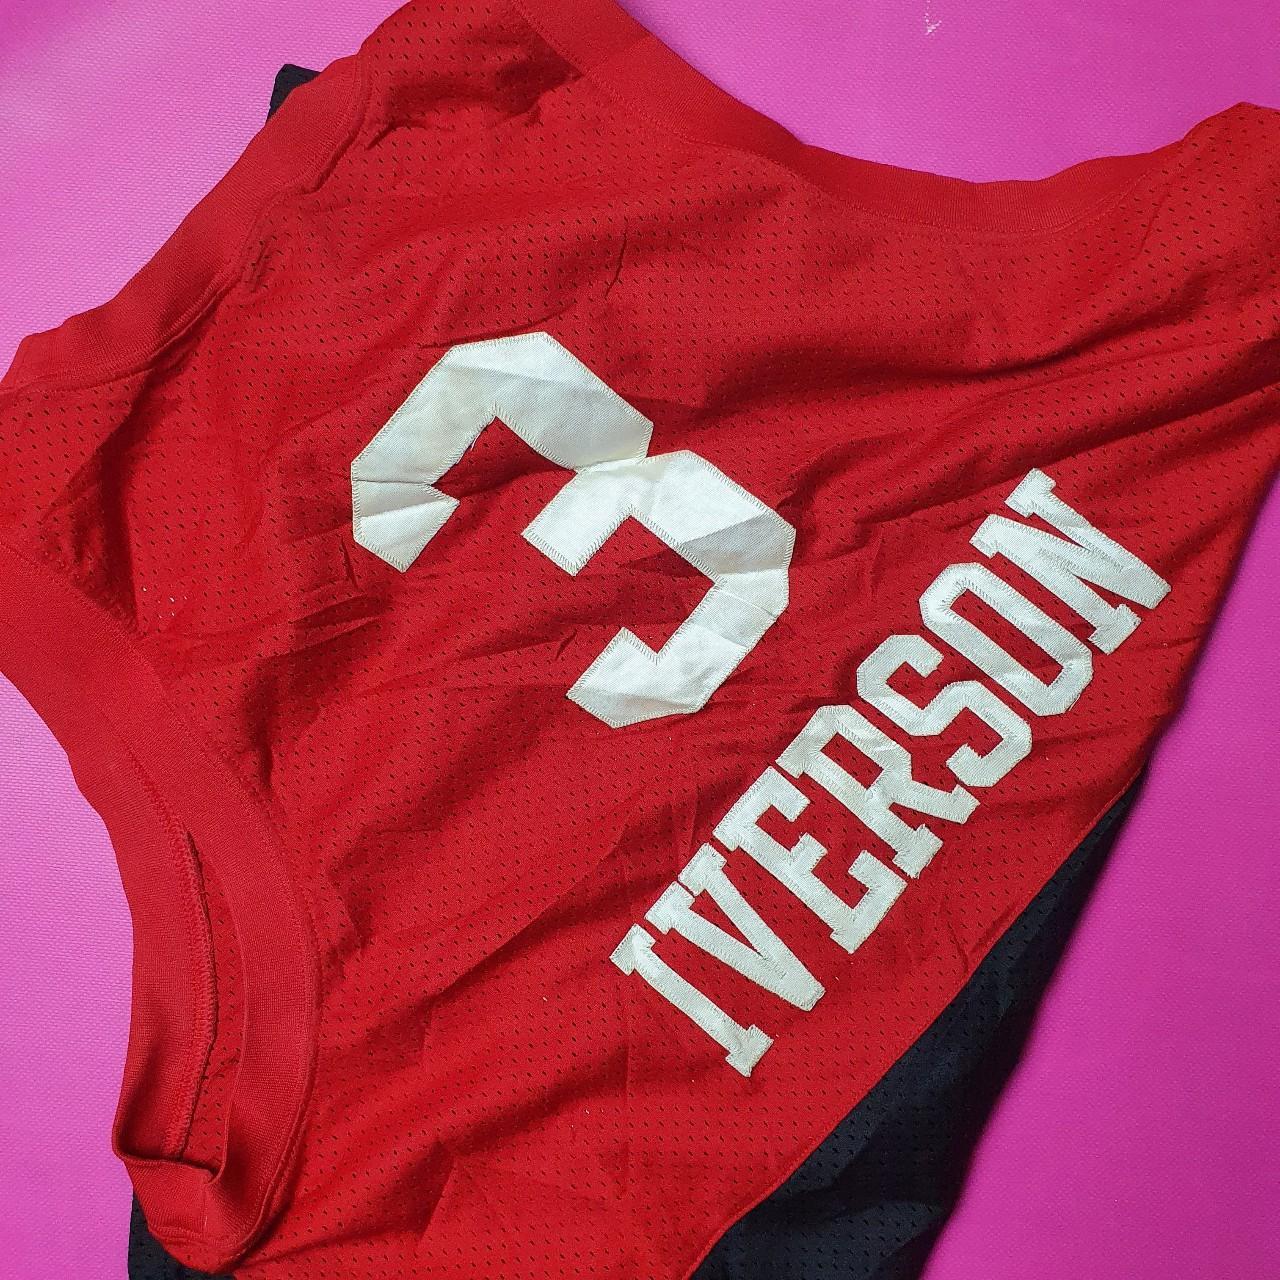 Allen Iverson Philadelphia 76ers womens jersey - Depop